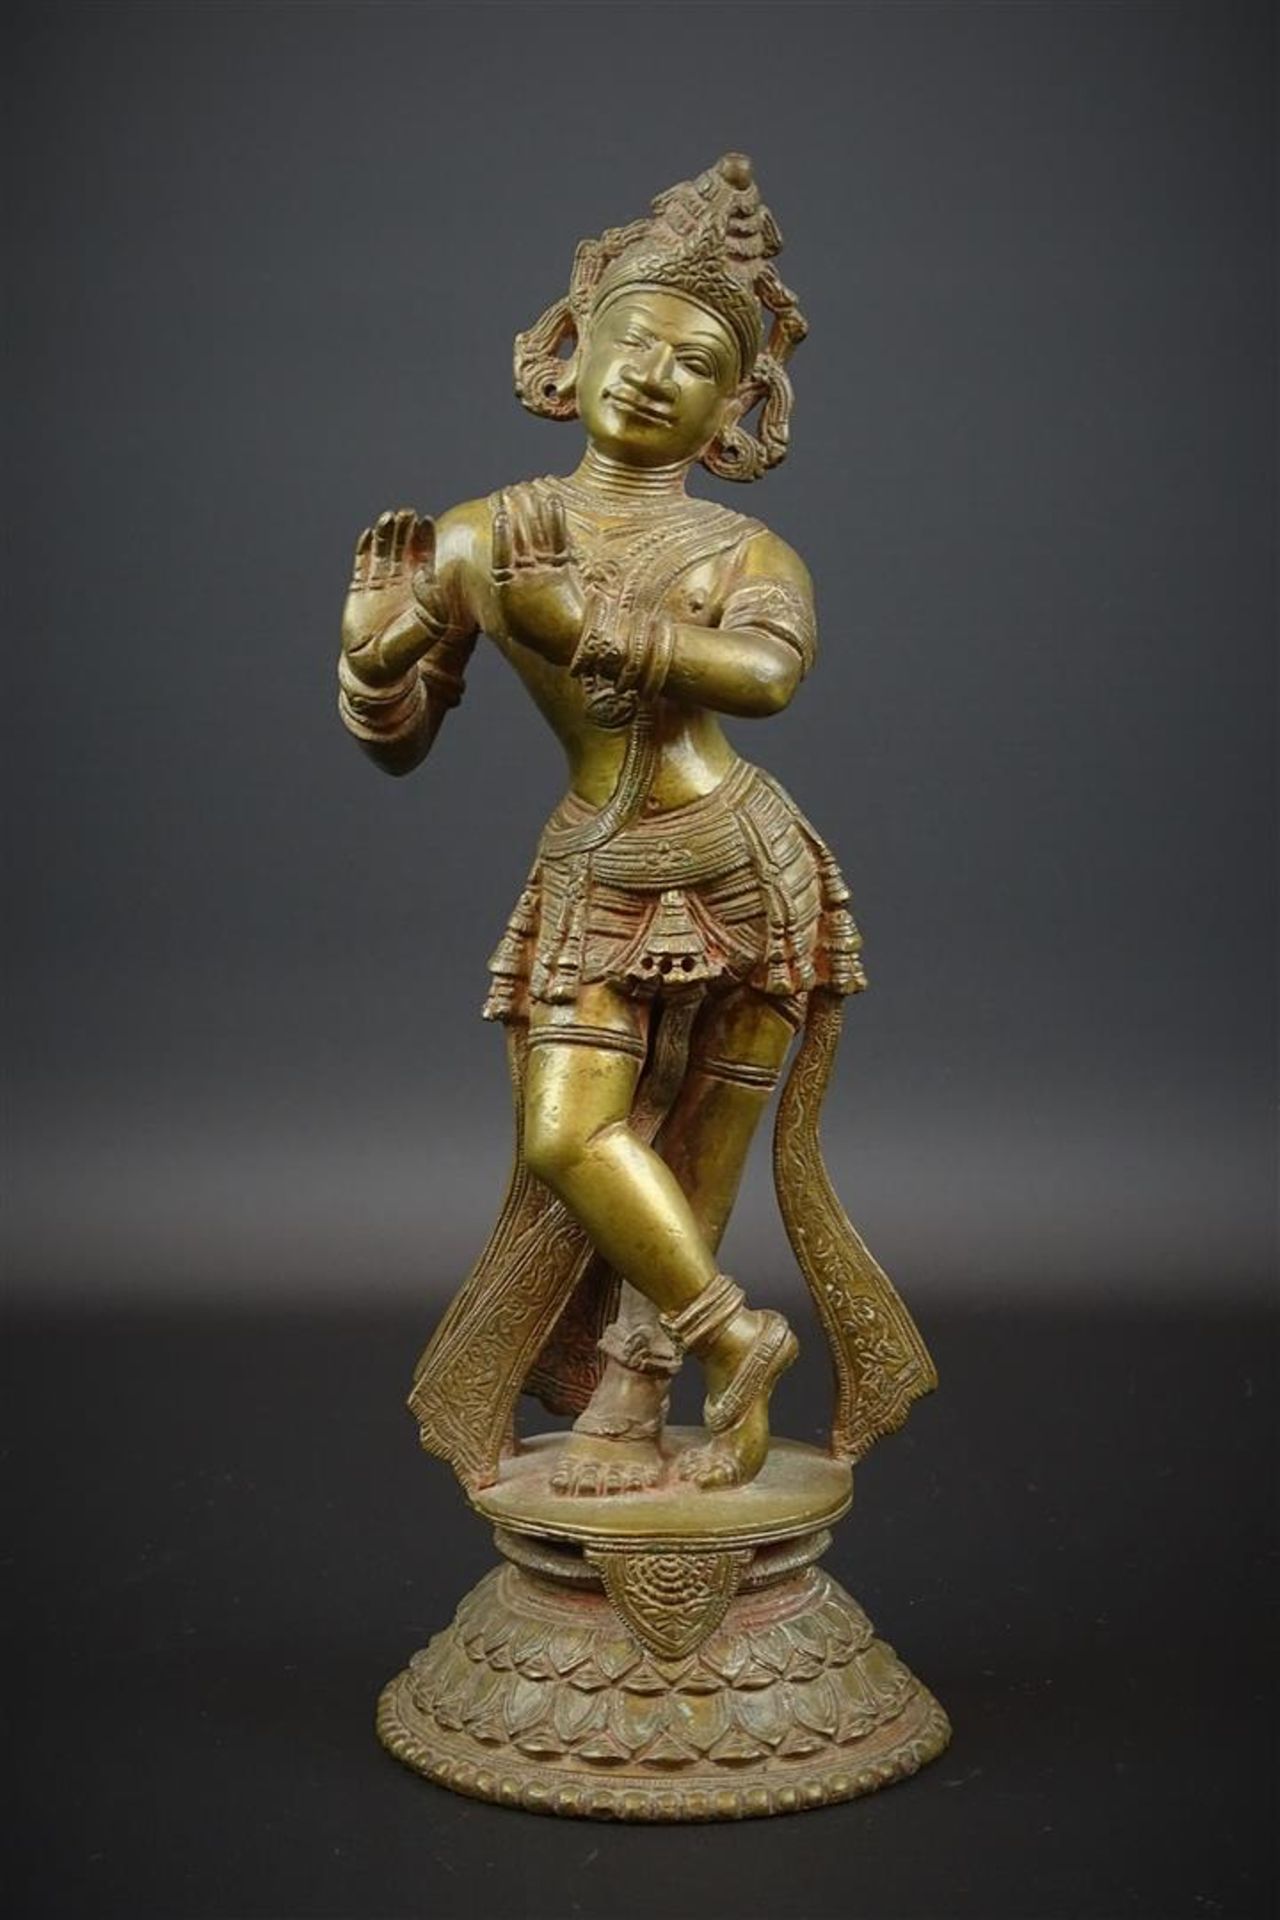 bronzen sculptuur met voorstelling van Shiva, Rajasthan, 19e/ begin 20e eeuw, h. 27 cm - - -29.